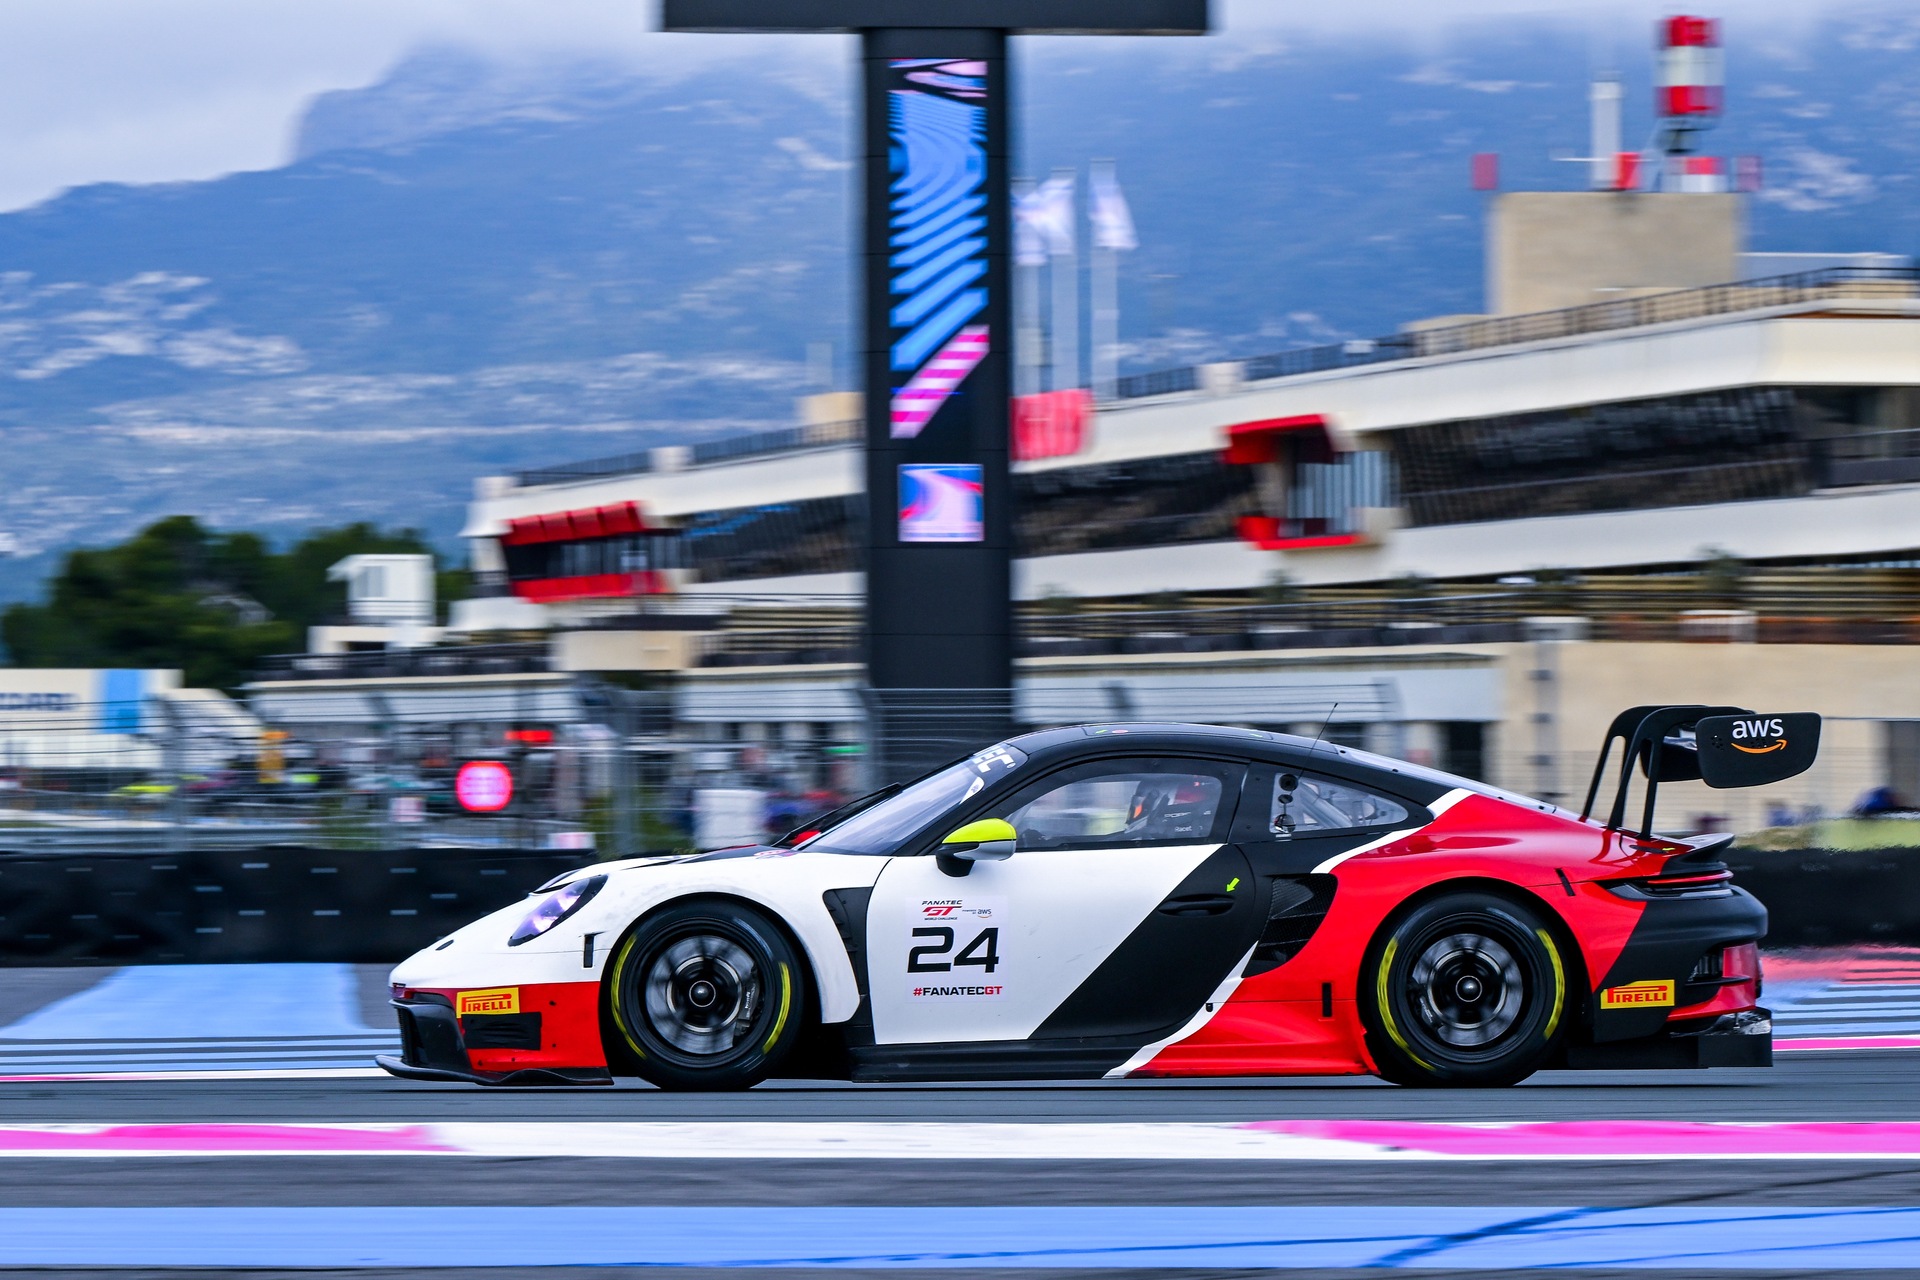 Alex Fontana: chiếc Porsche GT3 R của Trung tâm Porsche Ticino và Bộ sưu tập xe hơi sẽ tham gia GT World Challenge vào năm 2023 với tay đua đến từ Ticino, Ivan Jacoma và Niki Leutwiler